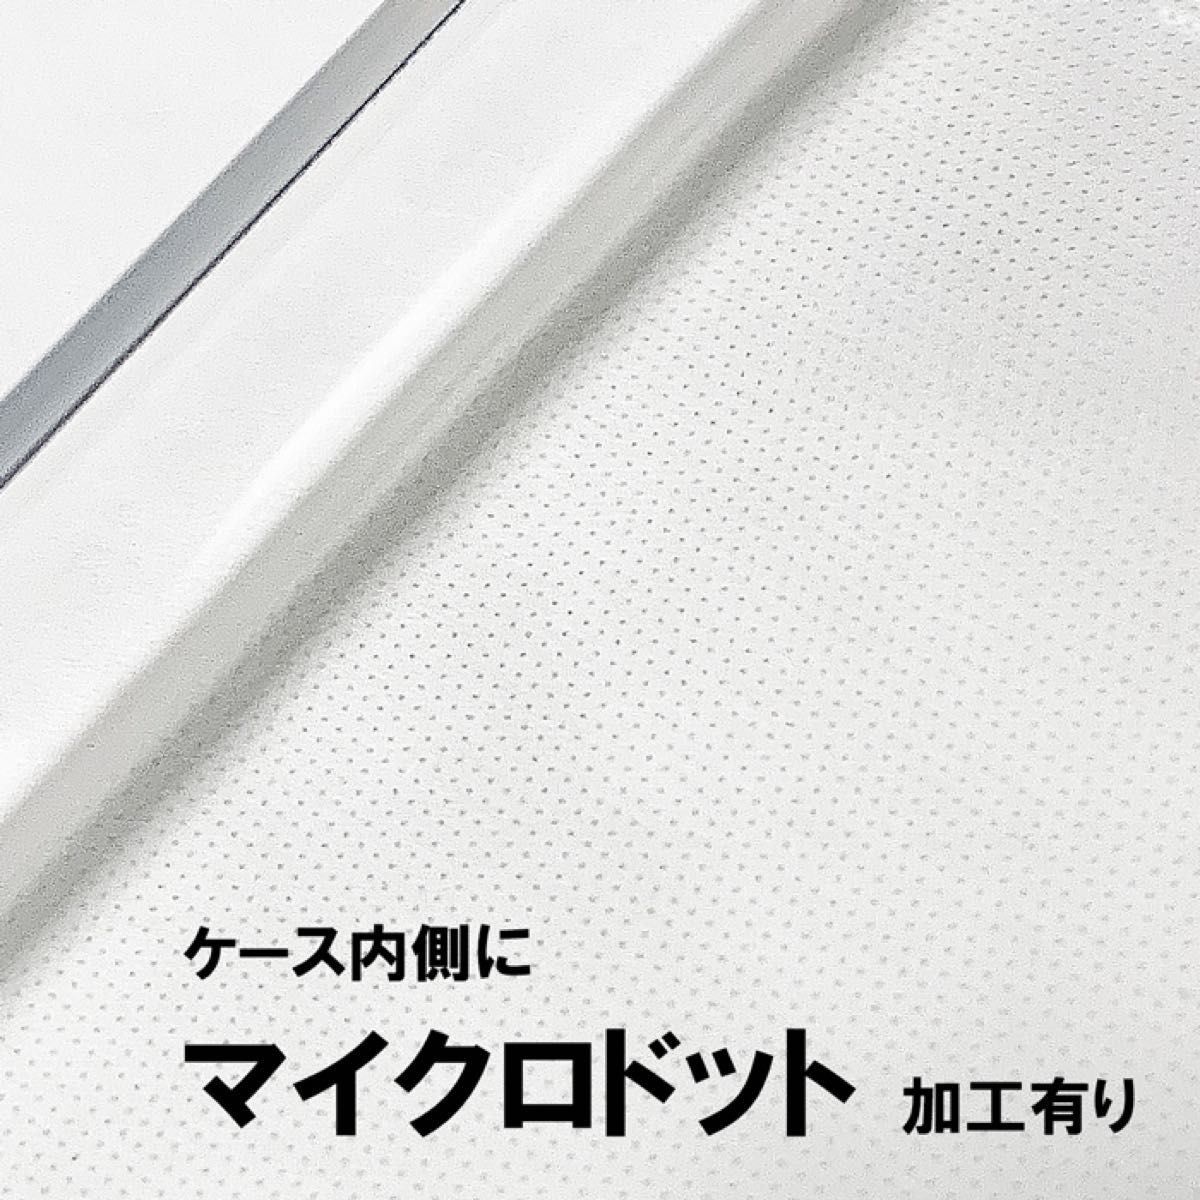 【セット】Rakuten Mini 液晶保護ガラスフィルムとクリアソフトケース 新品未使用 お得セット ラクテンミニ 楽天ミニ